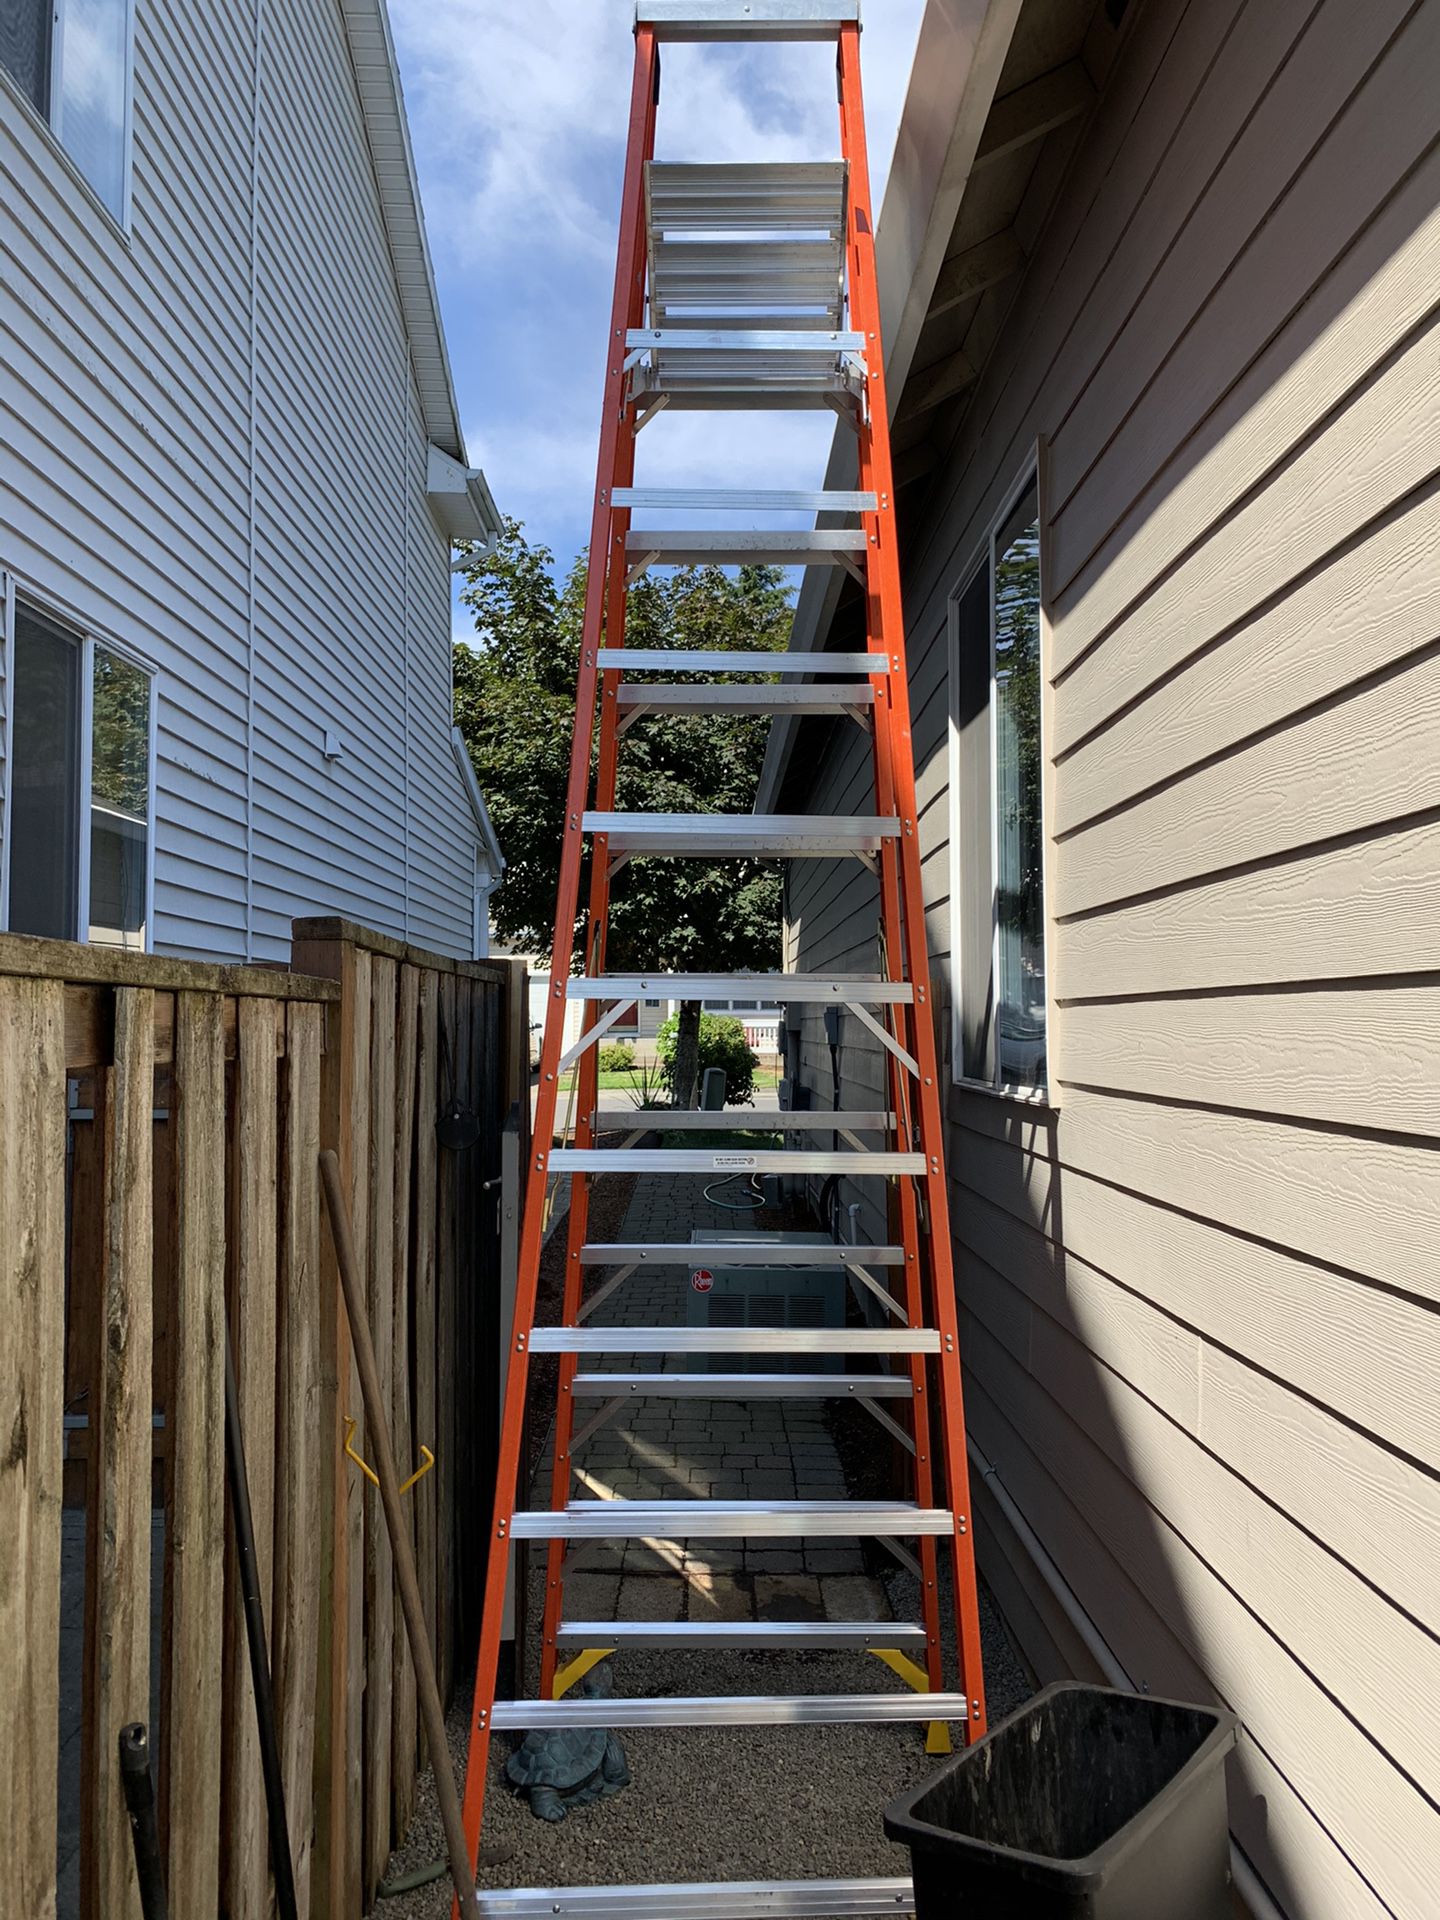 Werner 10’ reach ladder. With shelve